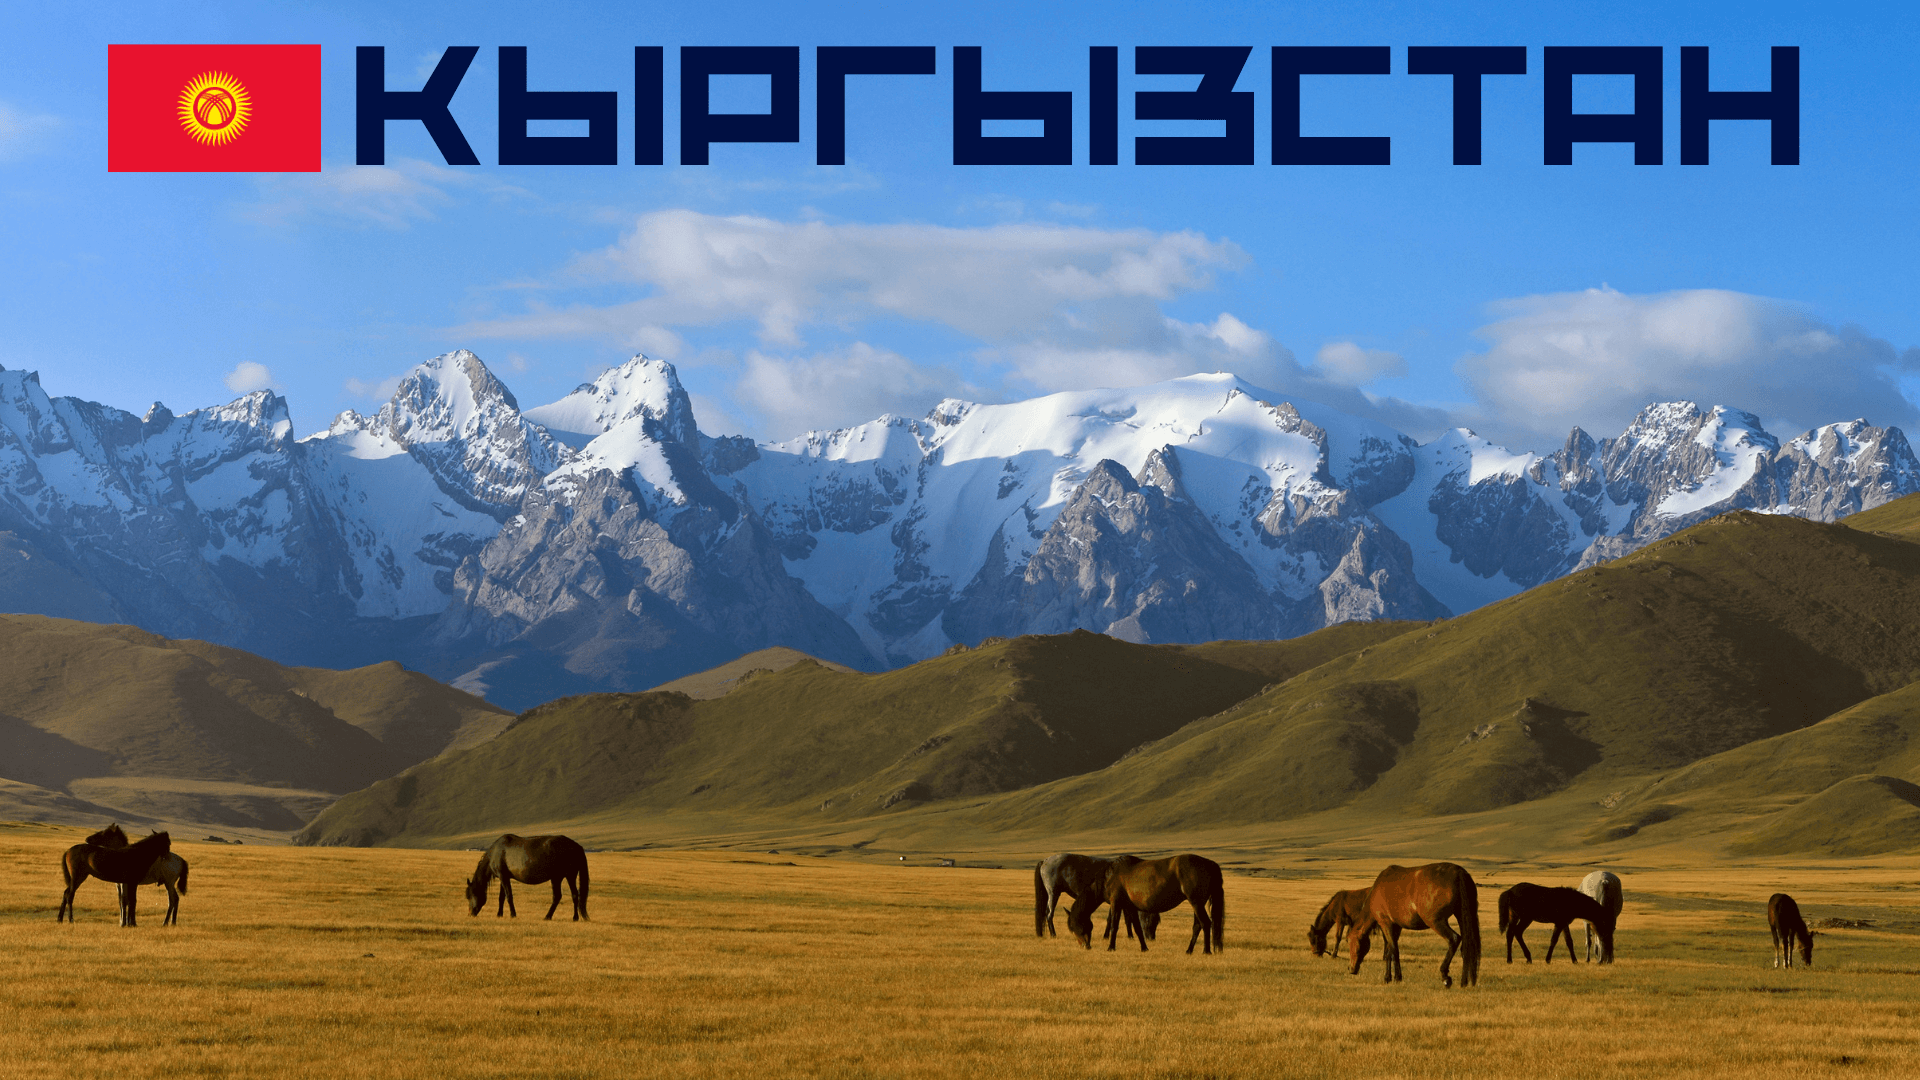 Интересные факты о Кыргызстане. Пройди тест про Киргизию, проверь хорошо ли ты знаешь эту страну!